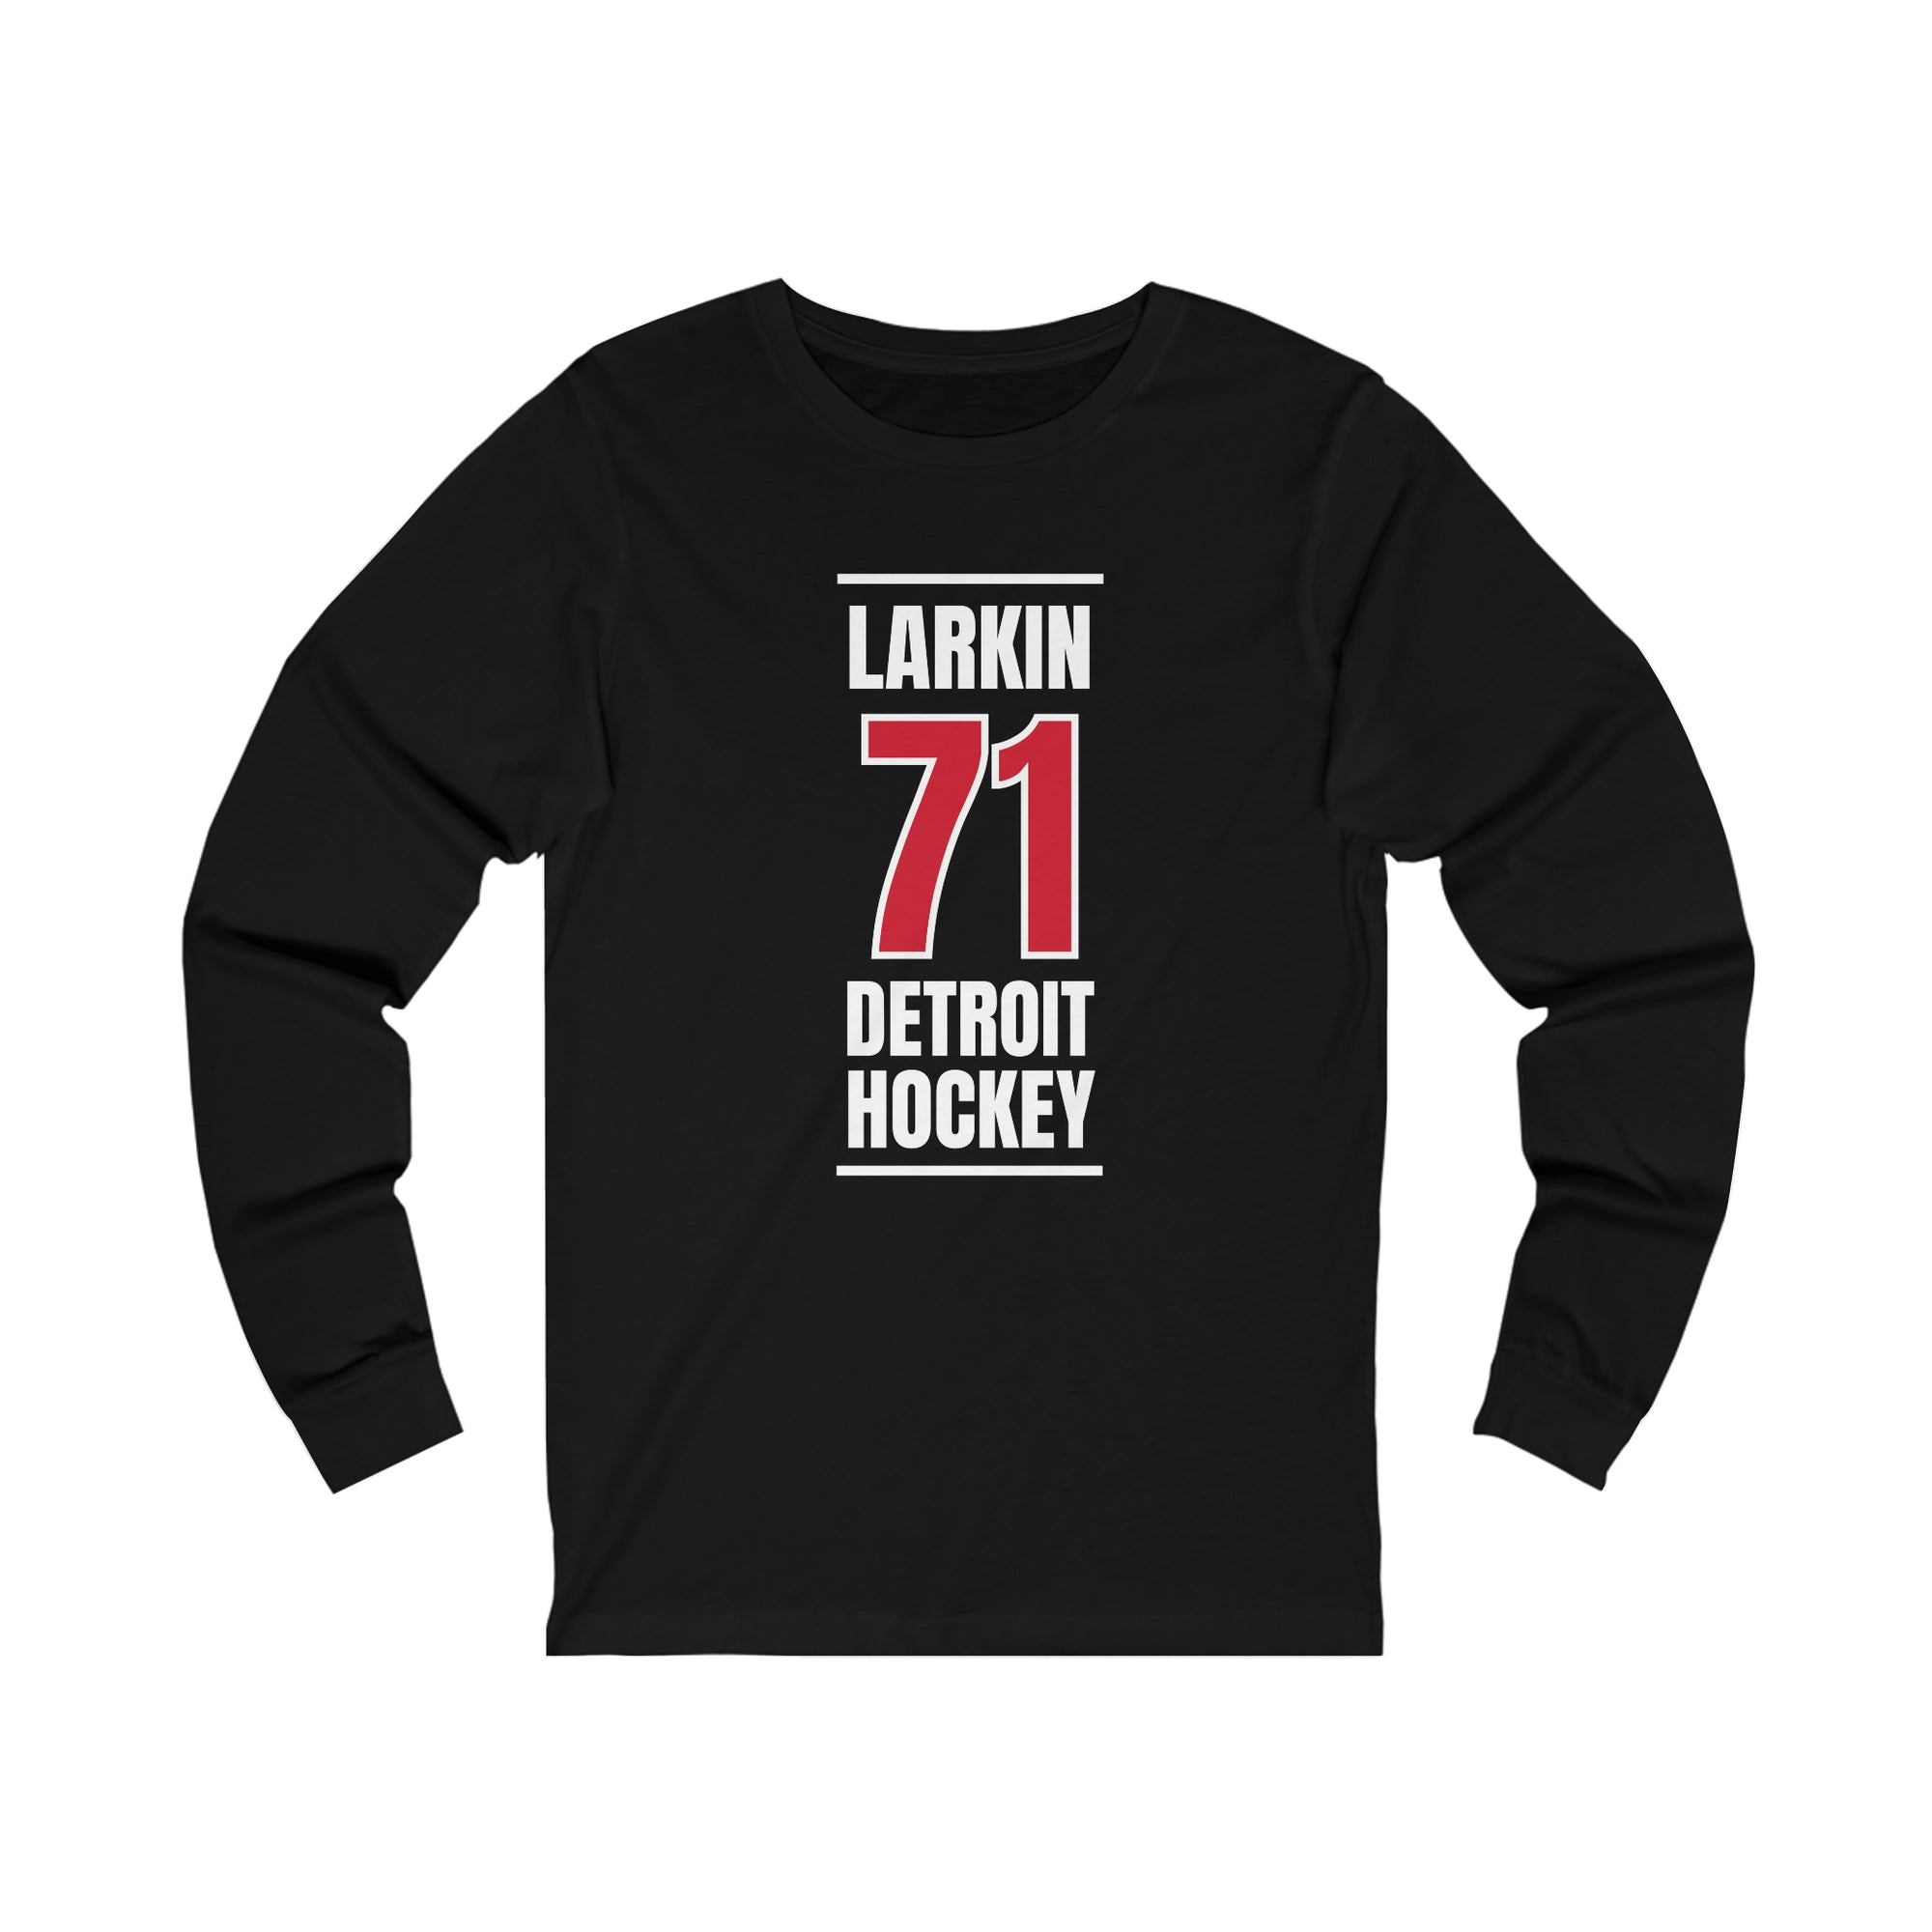 Larkin 71 Detroit Hockey Red Vertical Design Unisex Jersey Long Sleeve Shirt